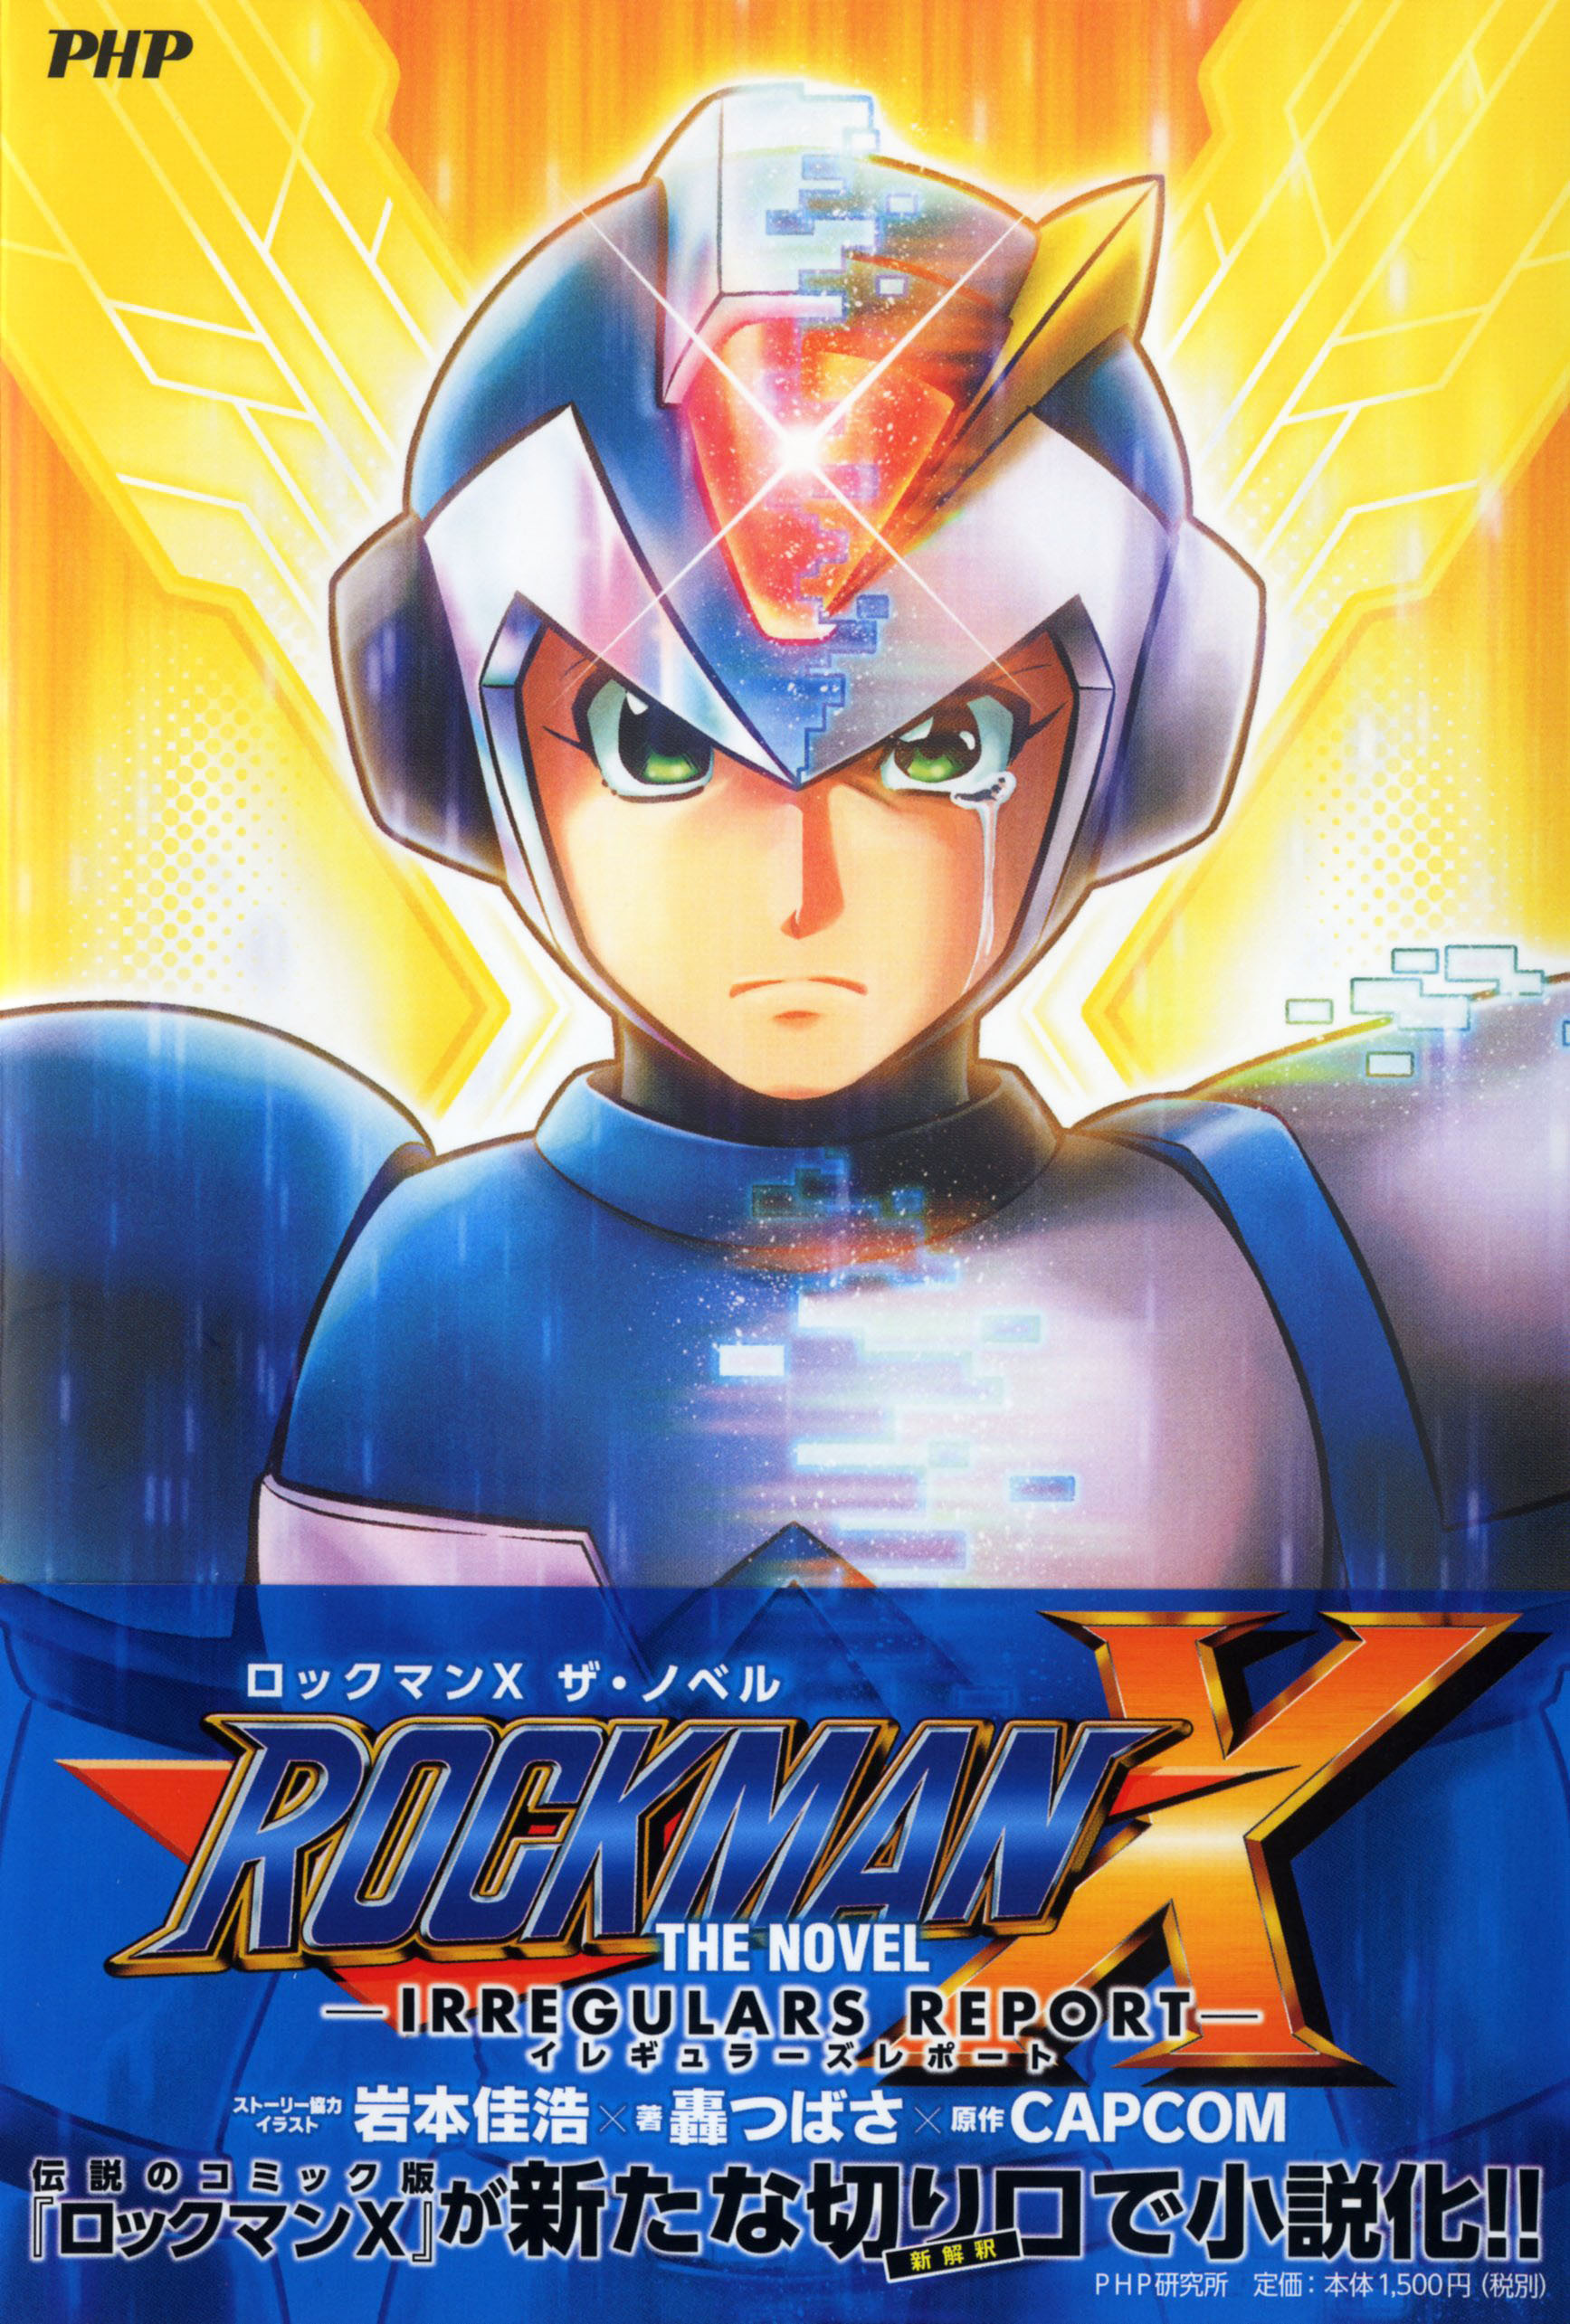 カプコンの名作アクションゲームが初の小説化 Rockman X The Novel 発売コミック版作者が原案とイラスト を担当 株式会社php研究所のプレスリリース